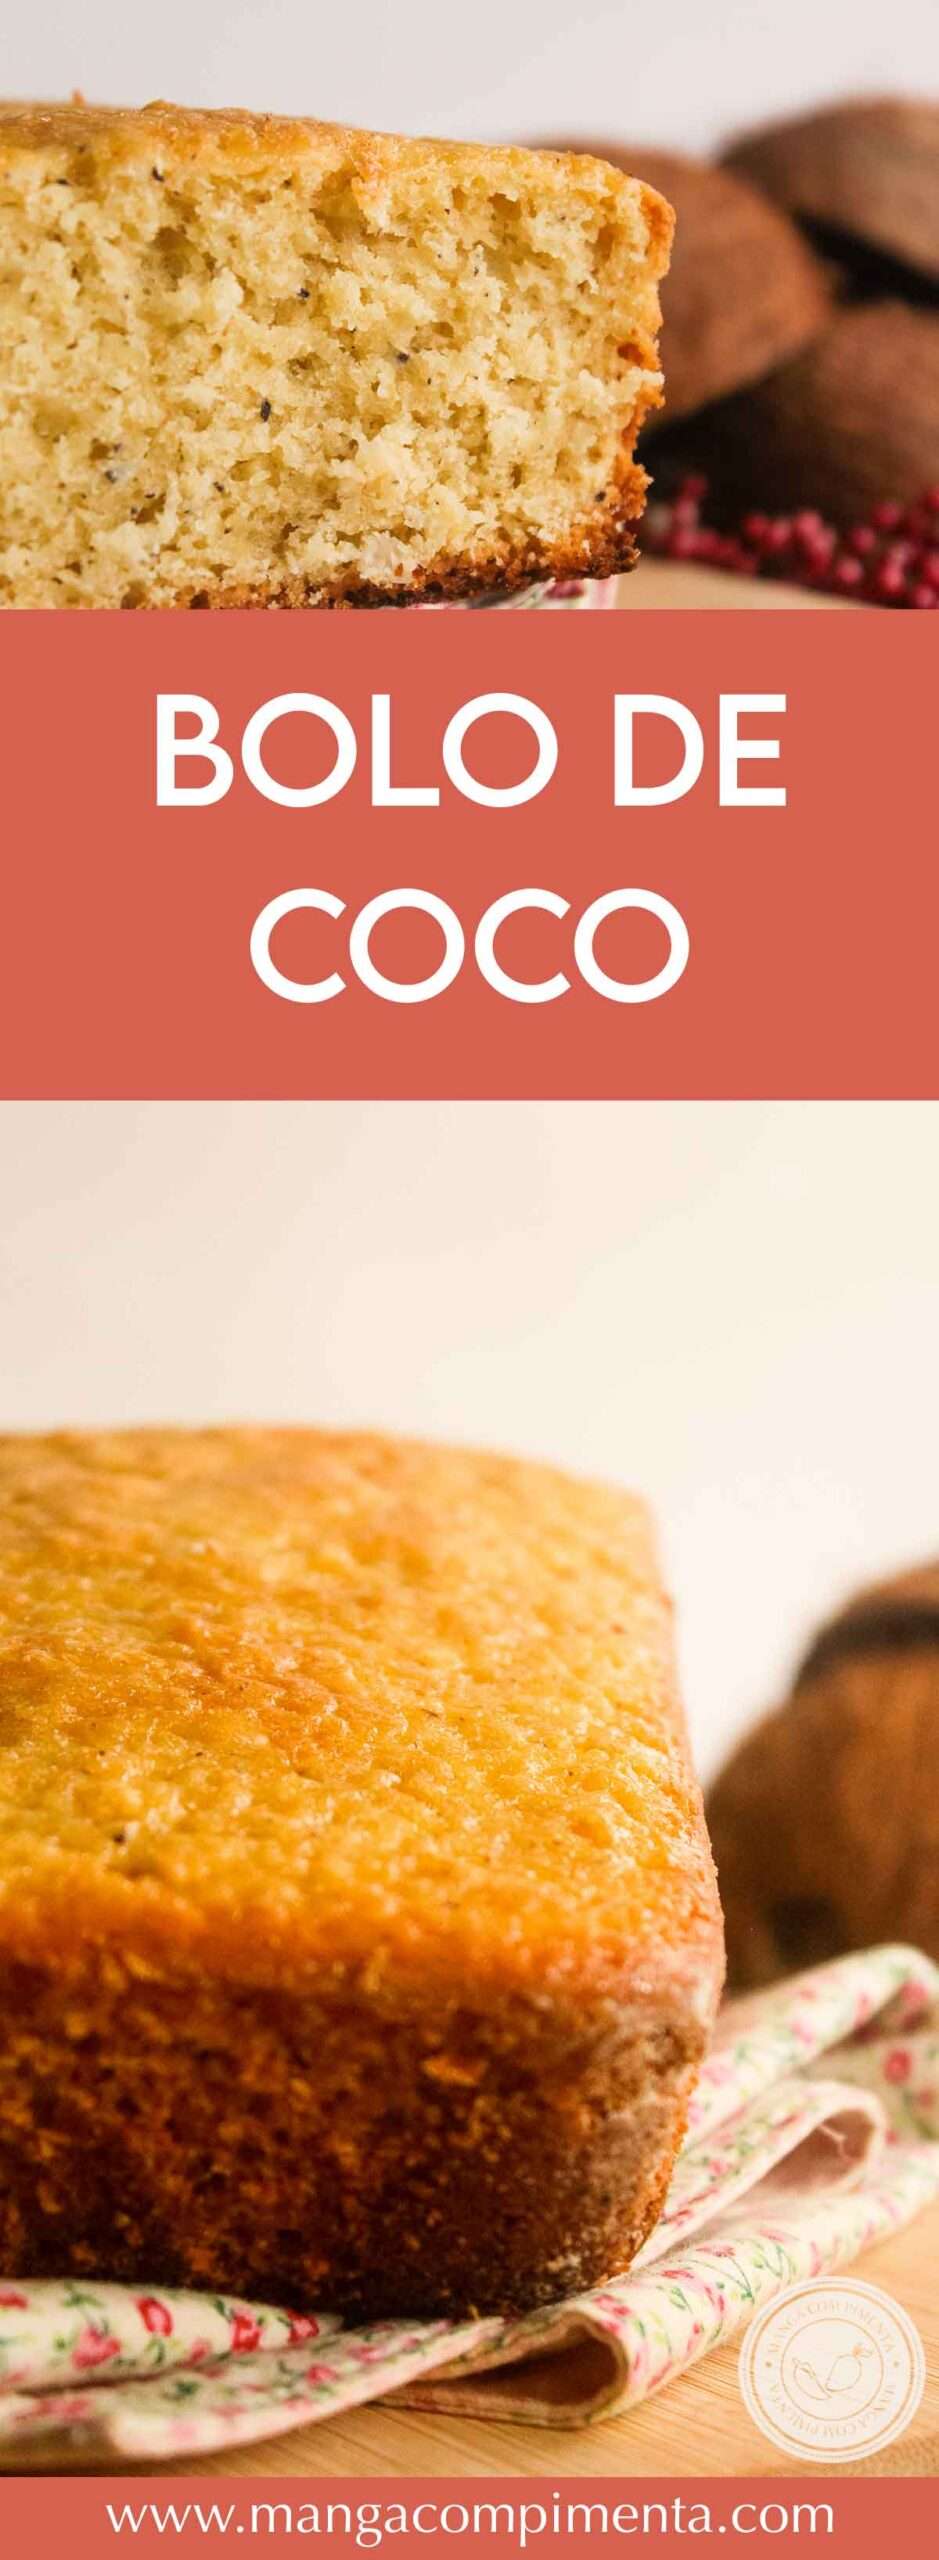 Receita de Bolo de Coco com a Polpa da Fruta - veja como é fácil preparar um delicioso lanche em casa.